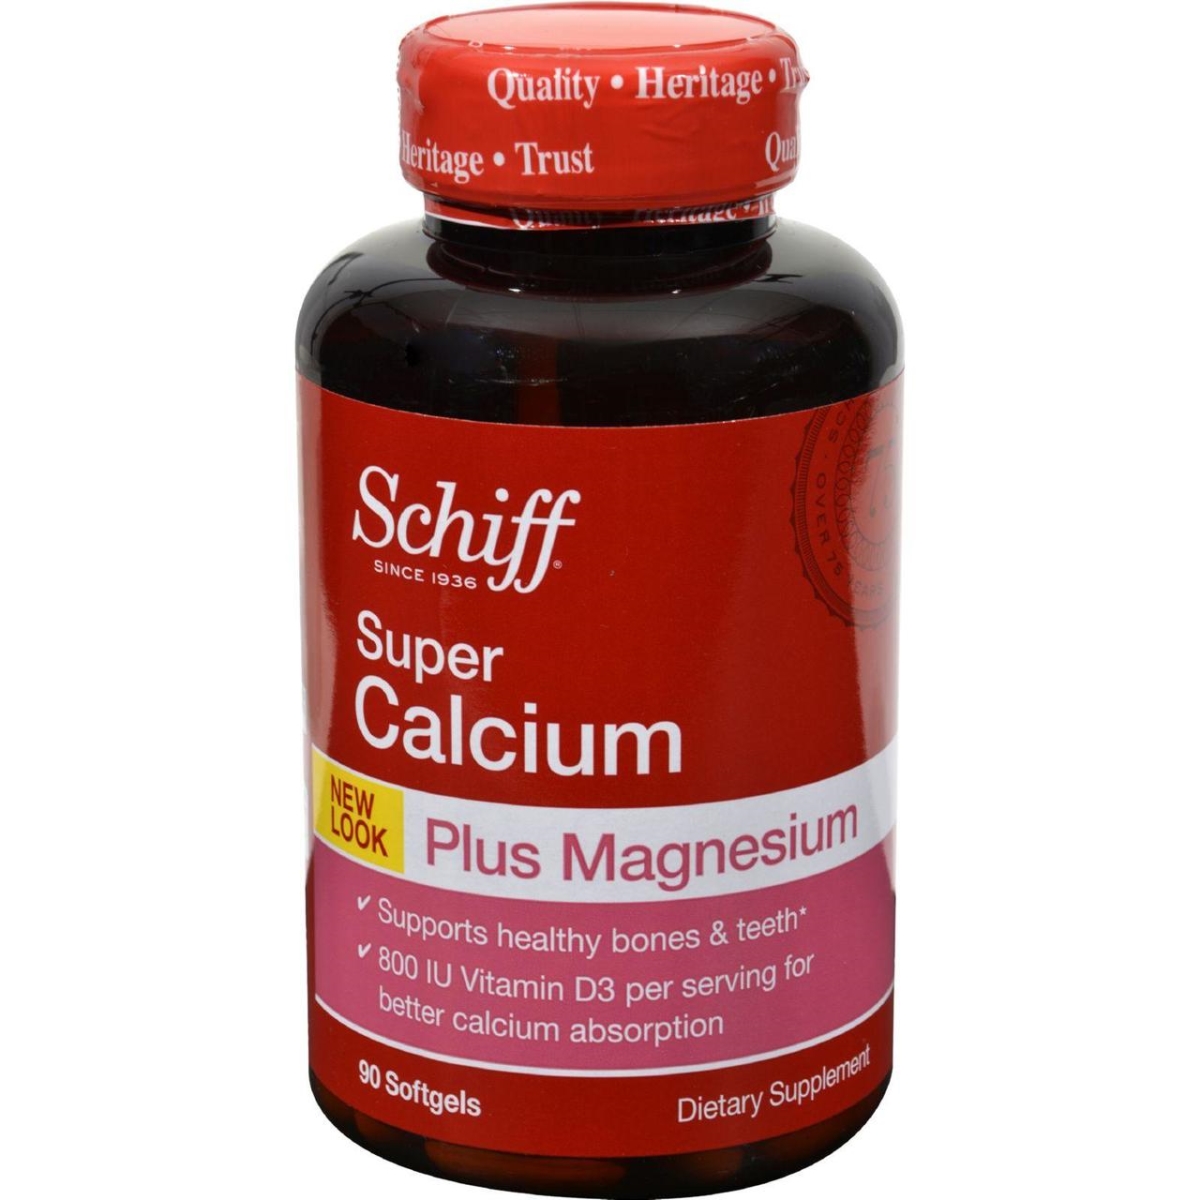 Hg0344044 Super Calcium Magnesium With Vitamin D - 90 Softgels